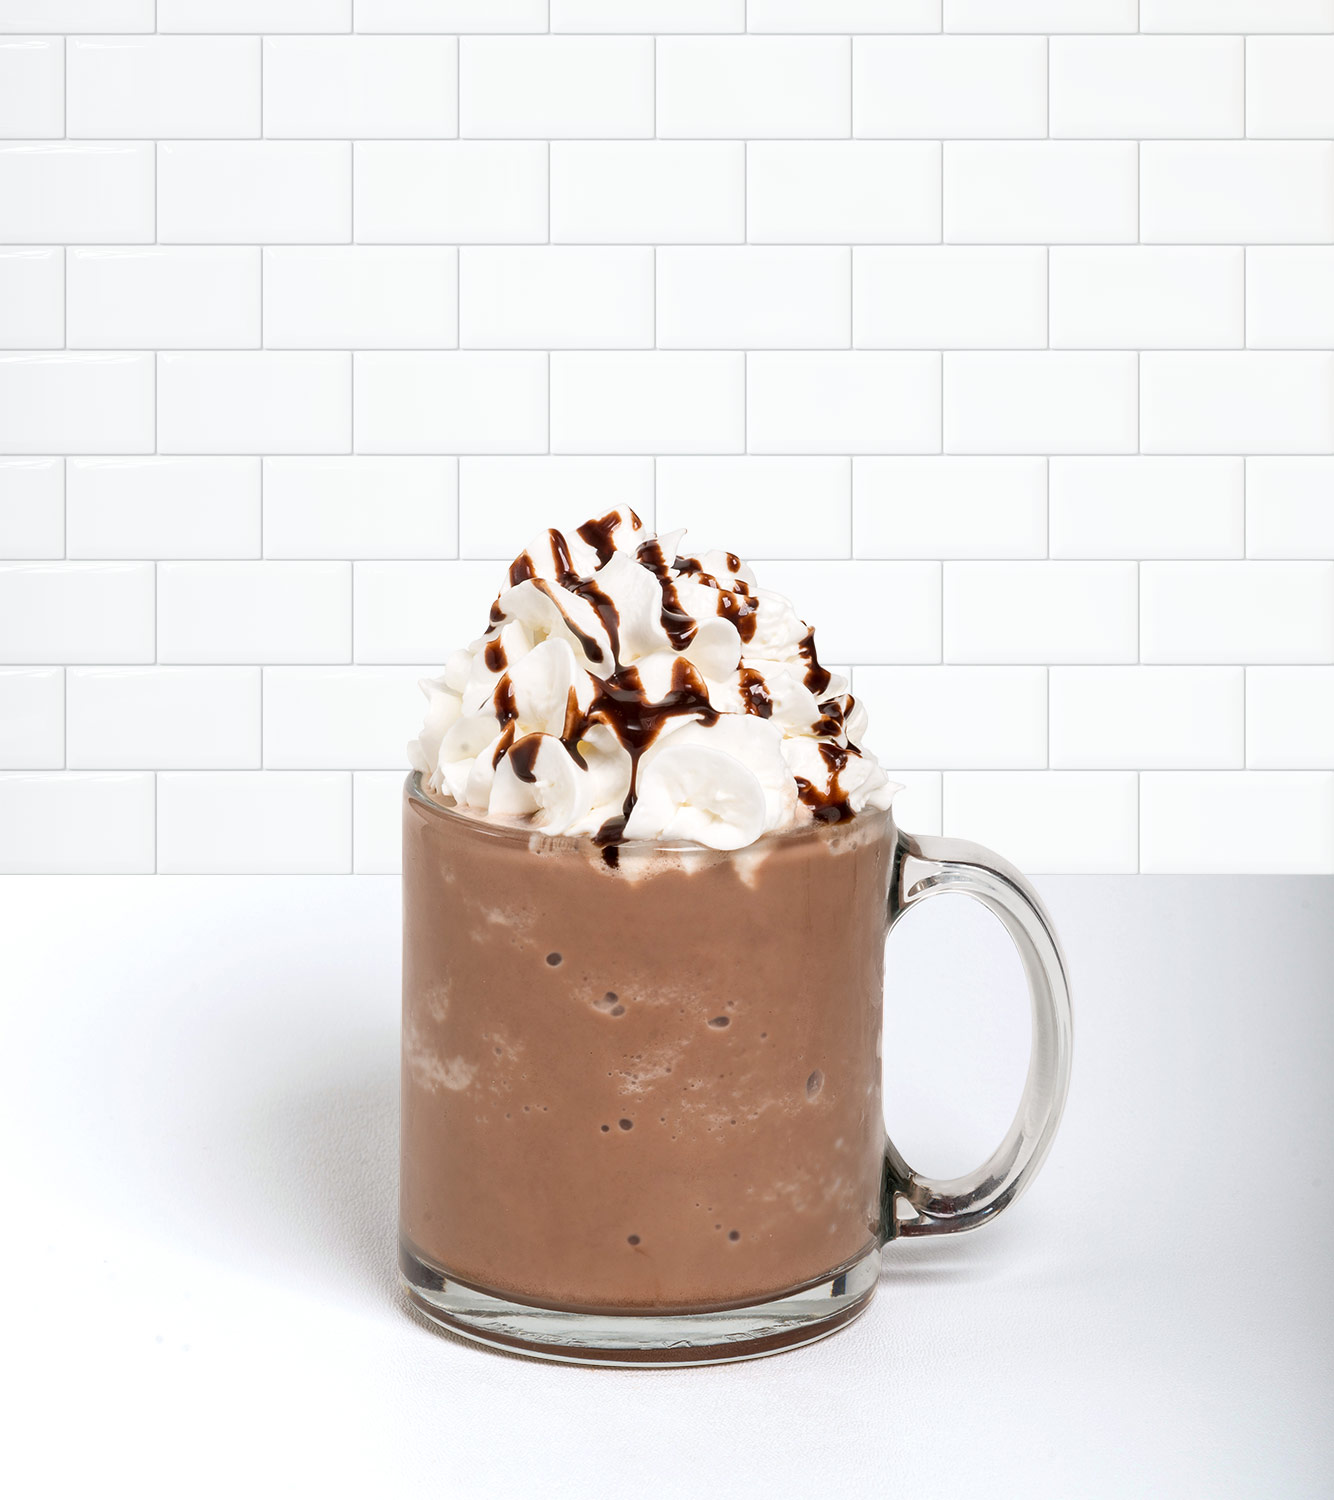 https://www.pjscoffee.com/uploads/frozen-hot-chocolate.jpg